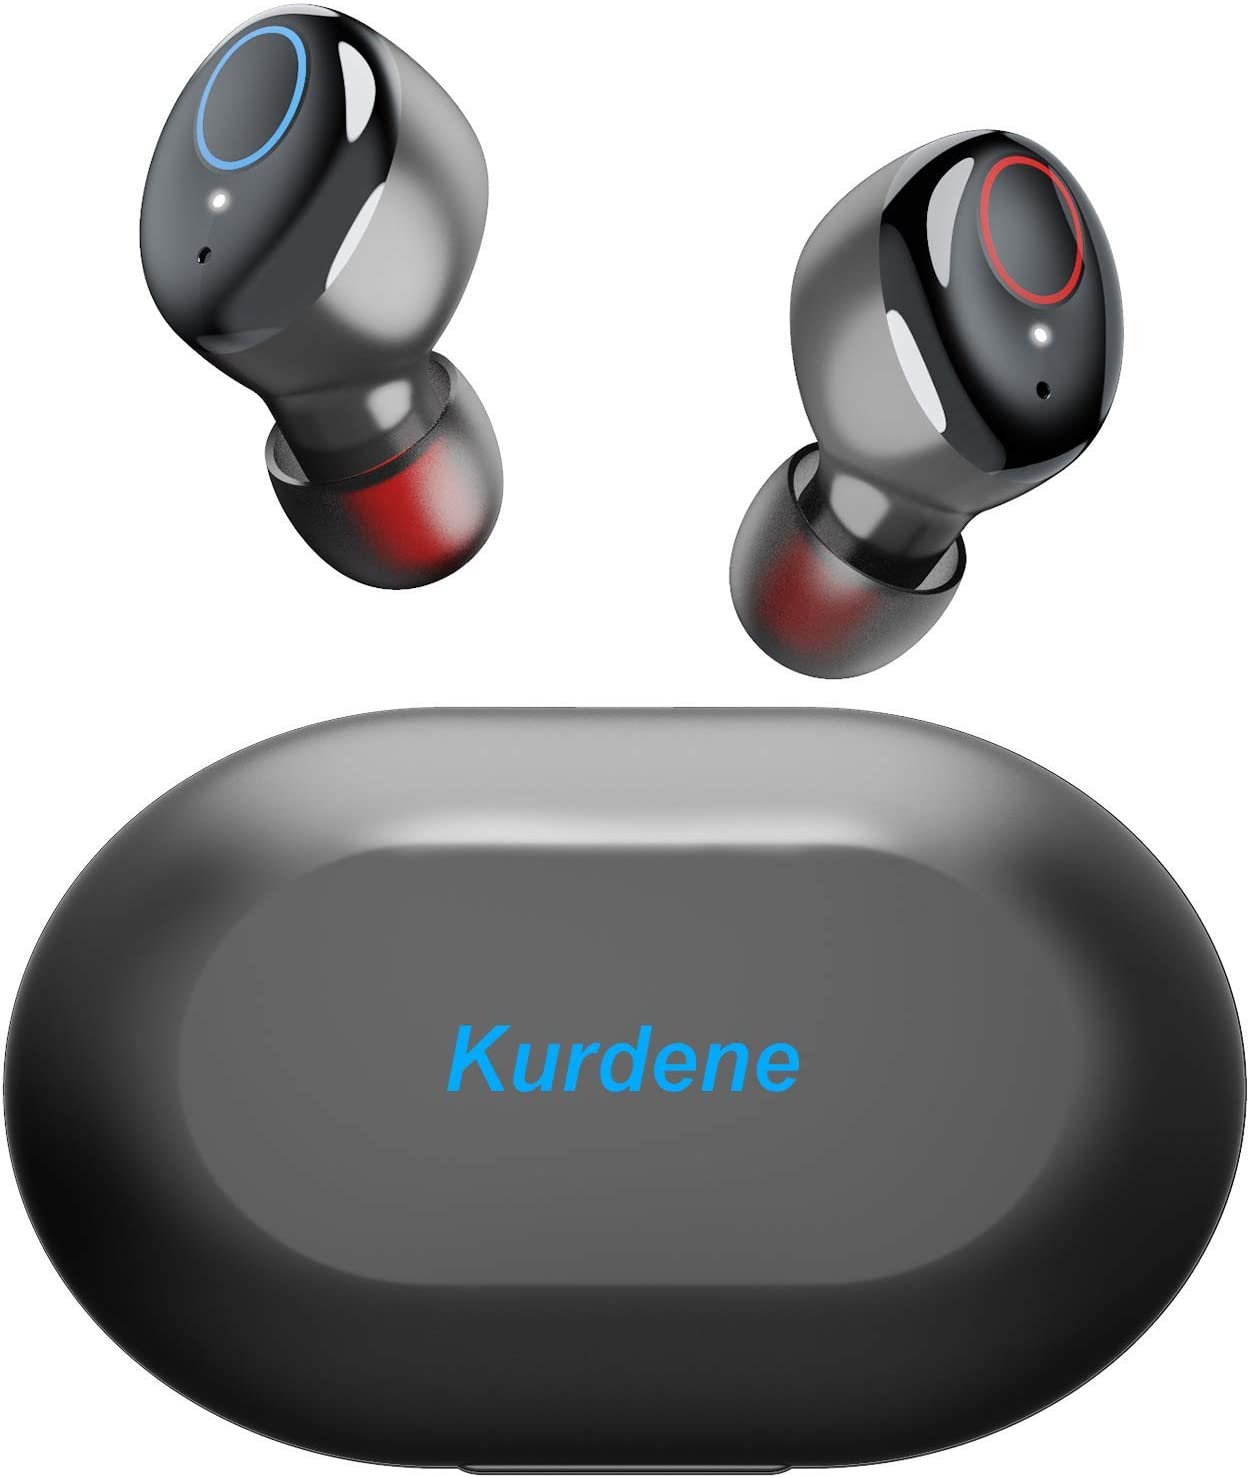 Kurdene Wireless Earbud